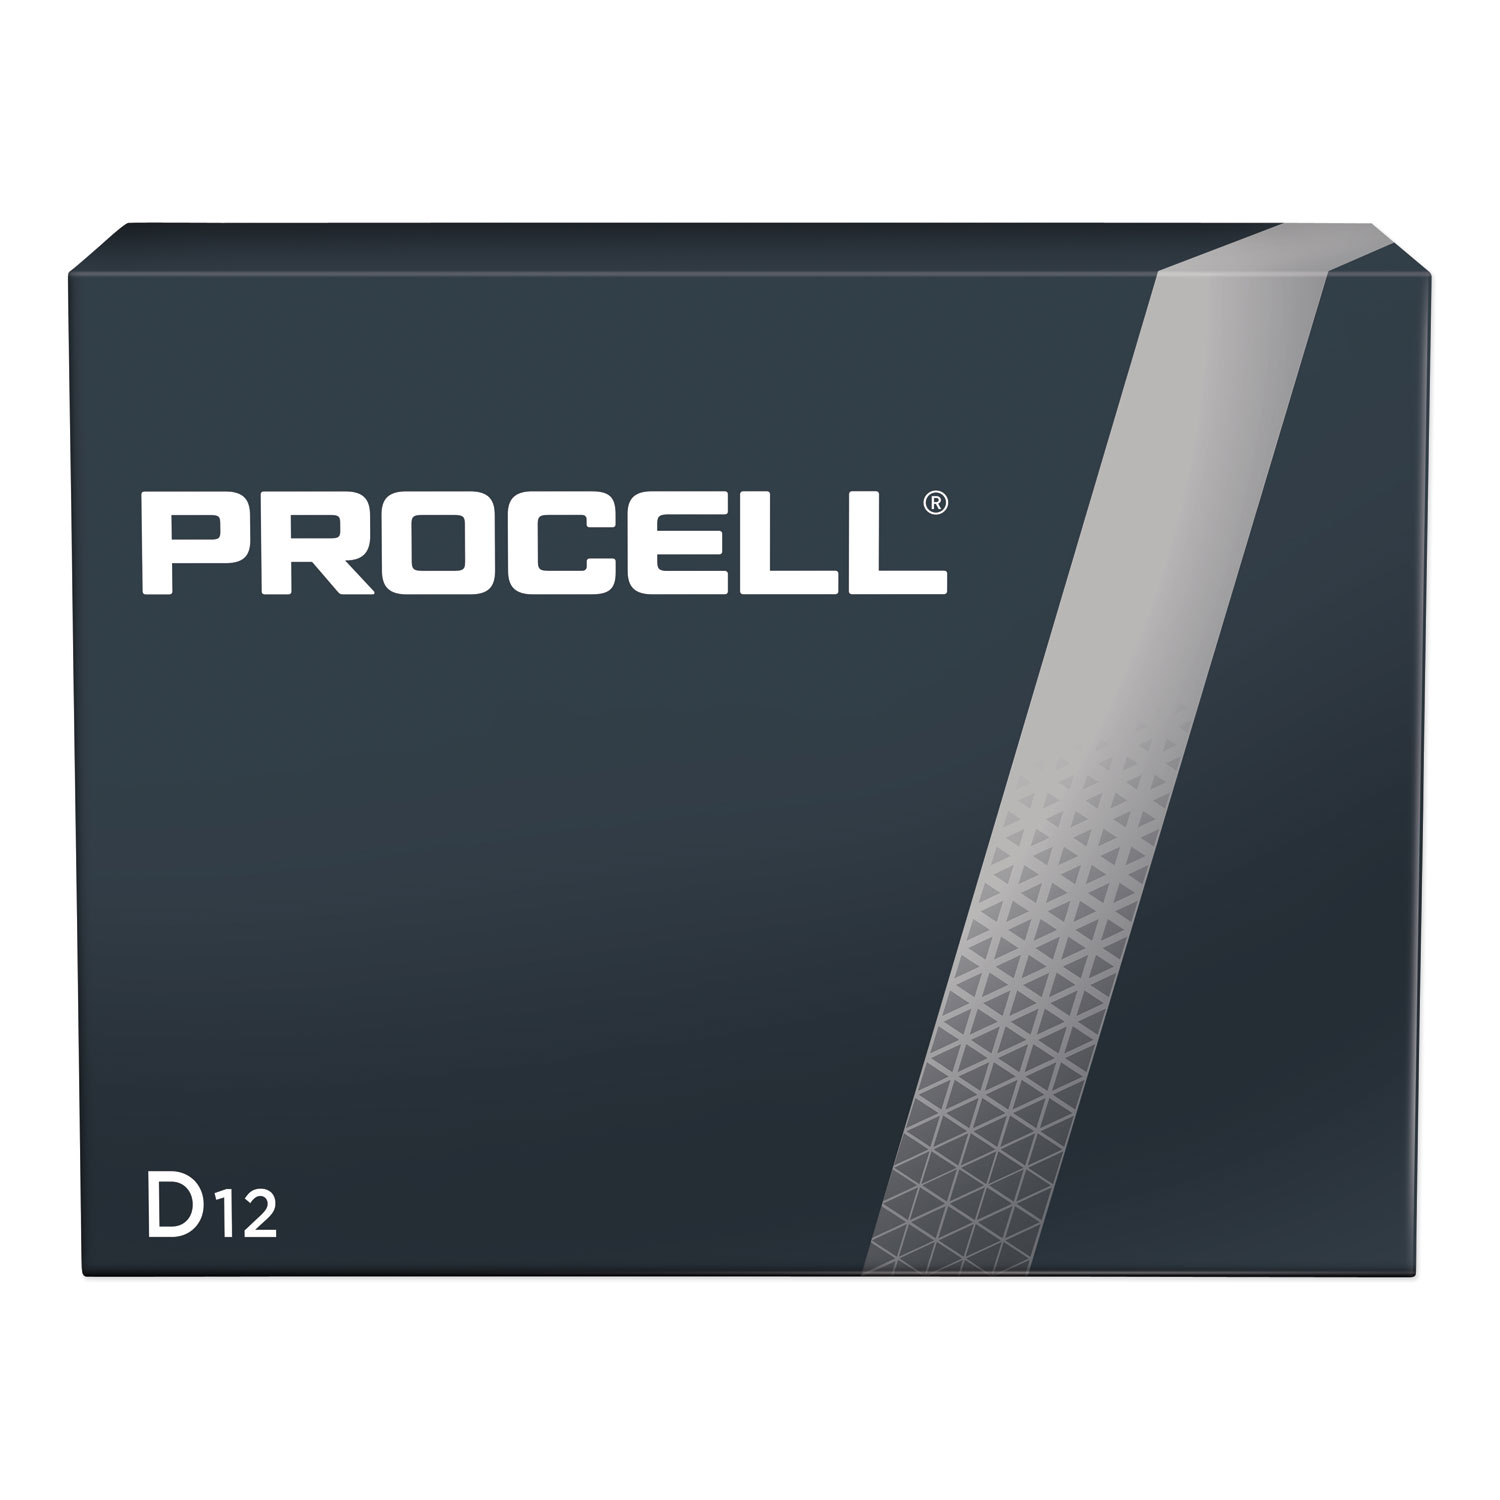  Duracell PC1300 Procell Alkaline D Batteries, 12/Box (DURPC1300) 